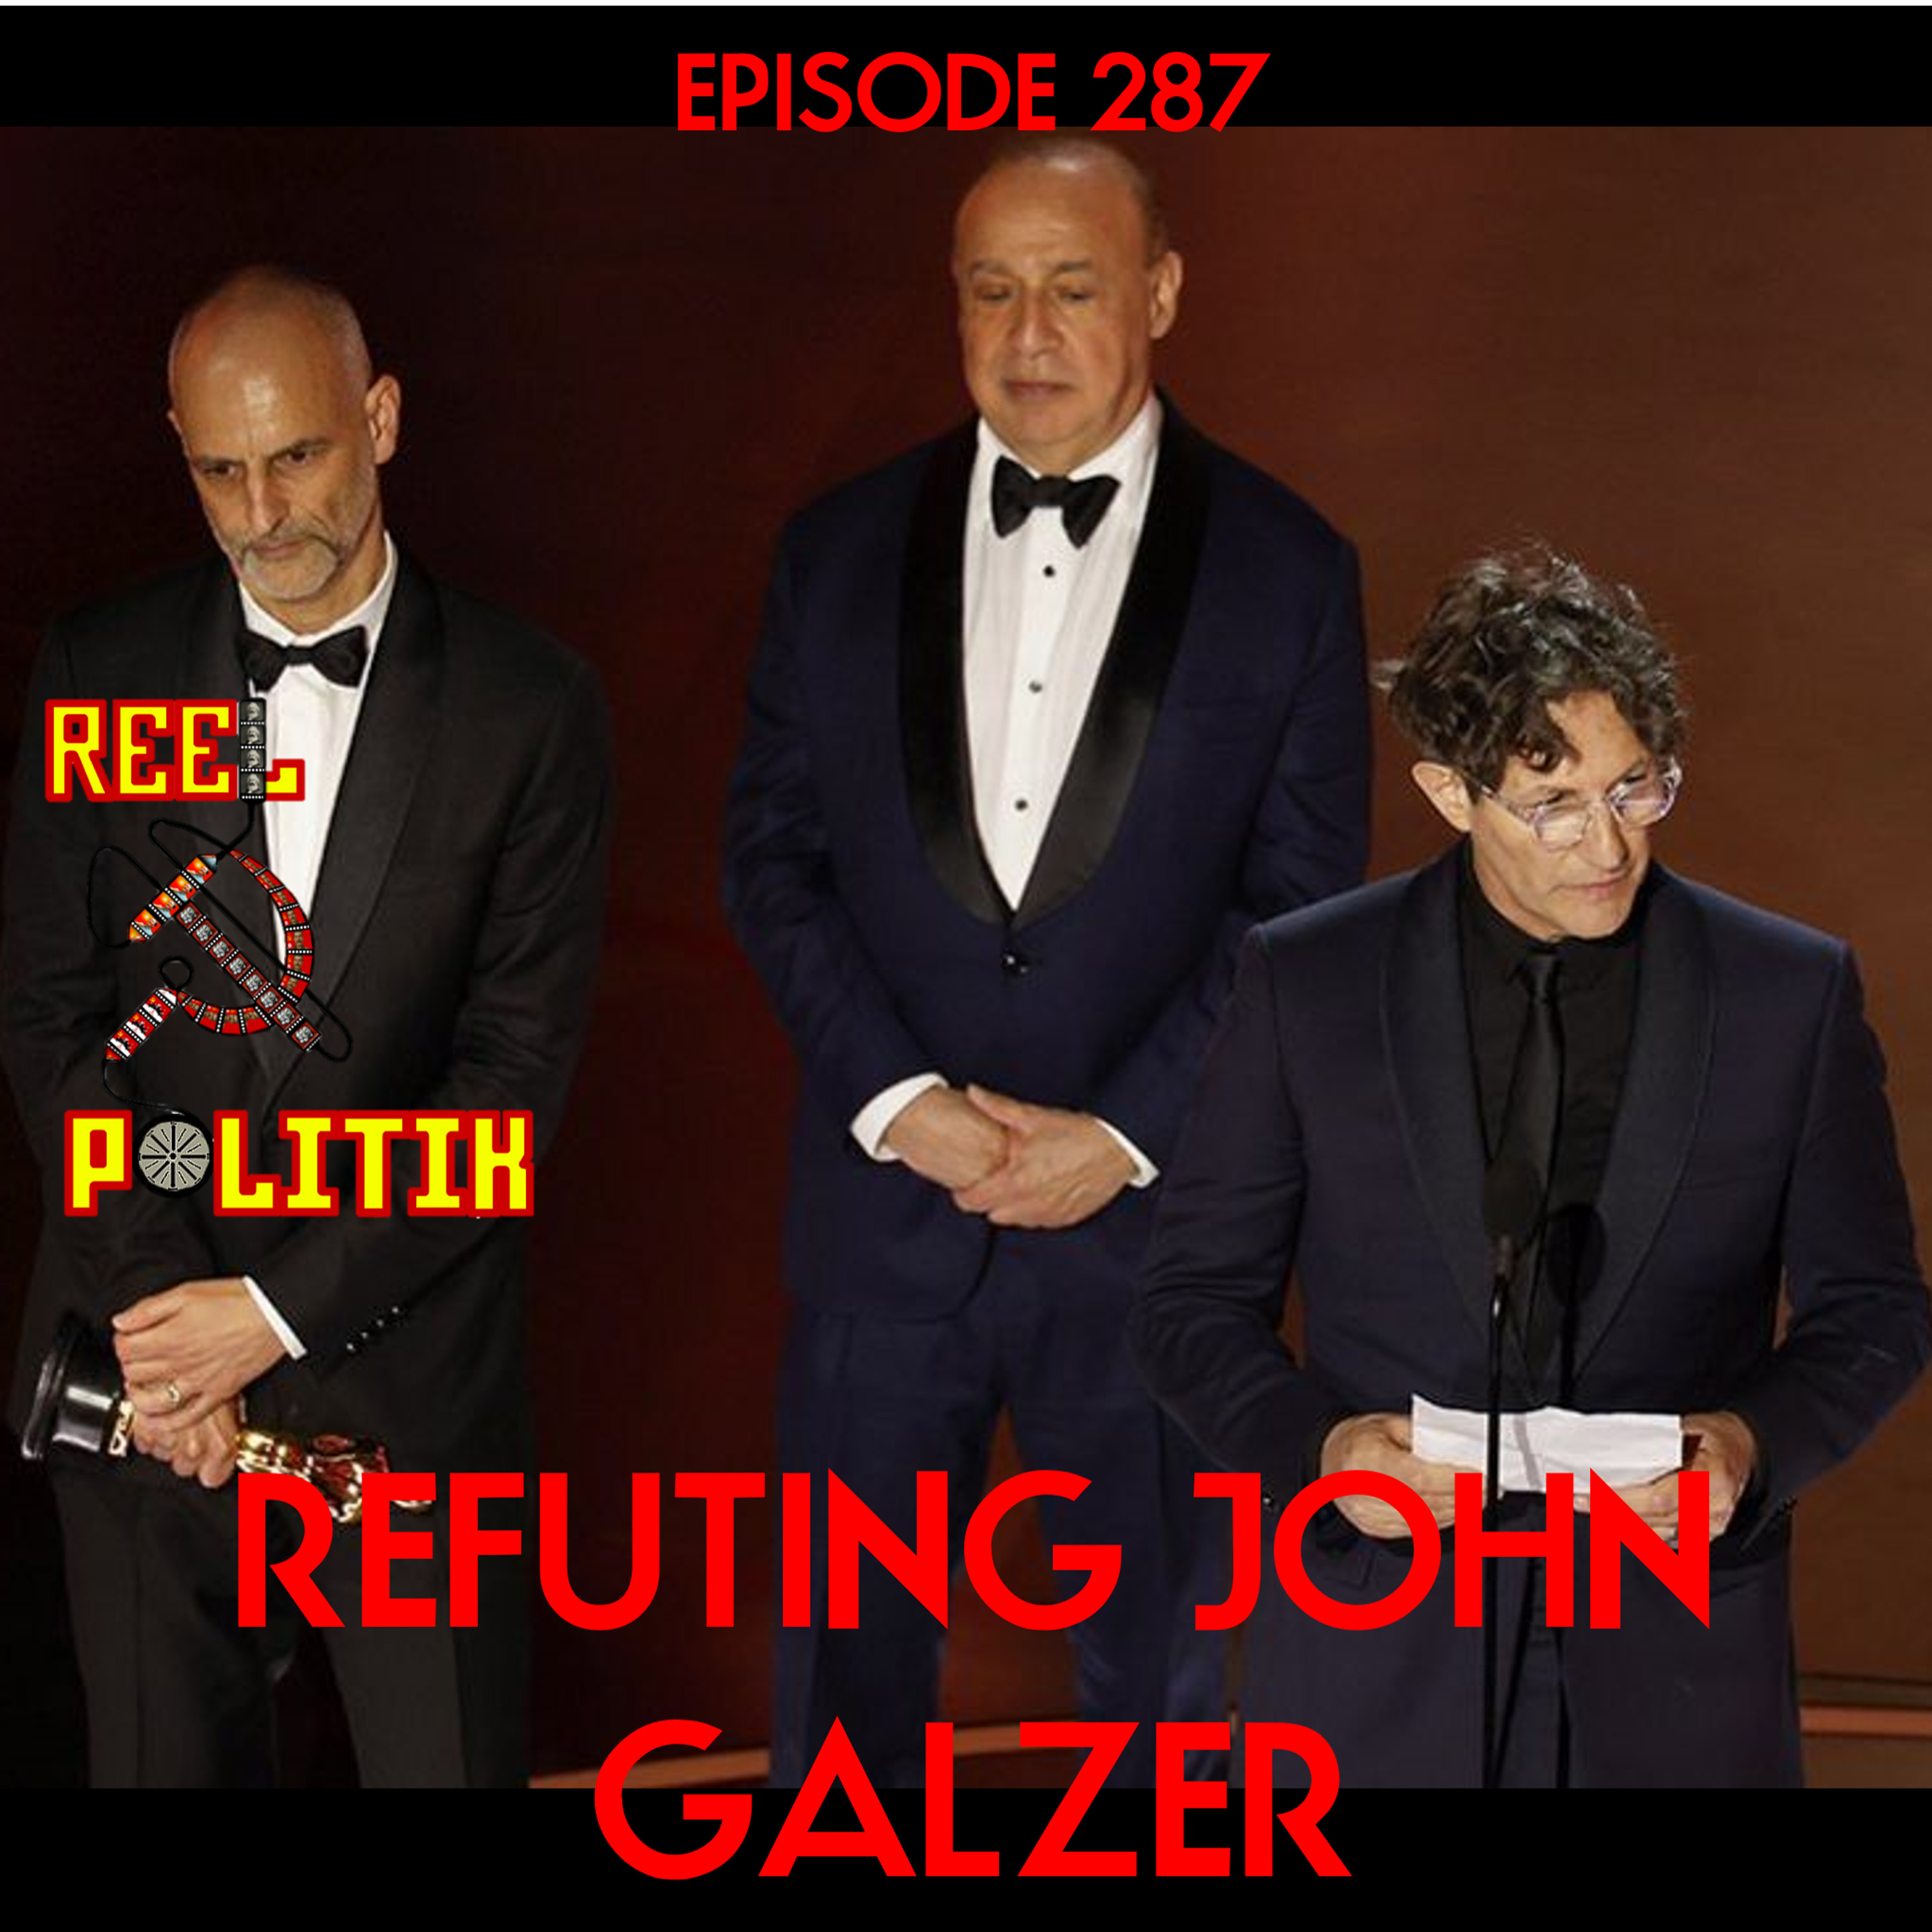 Episode 287 - Refuting John Galzer